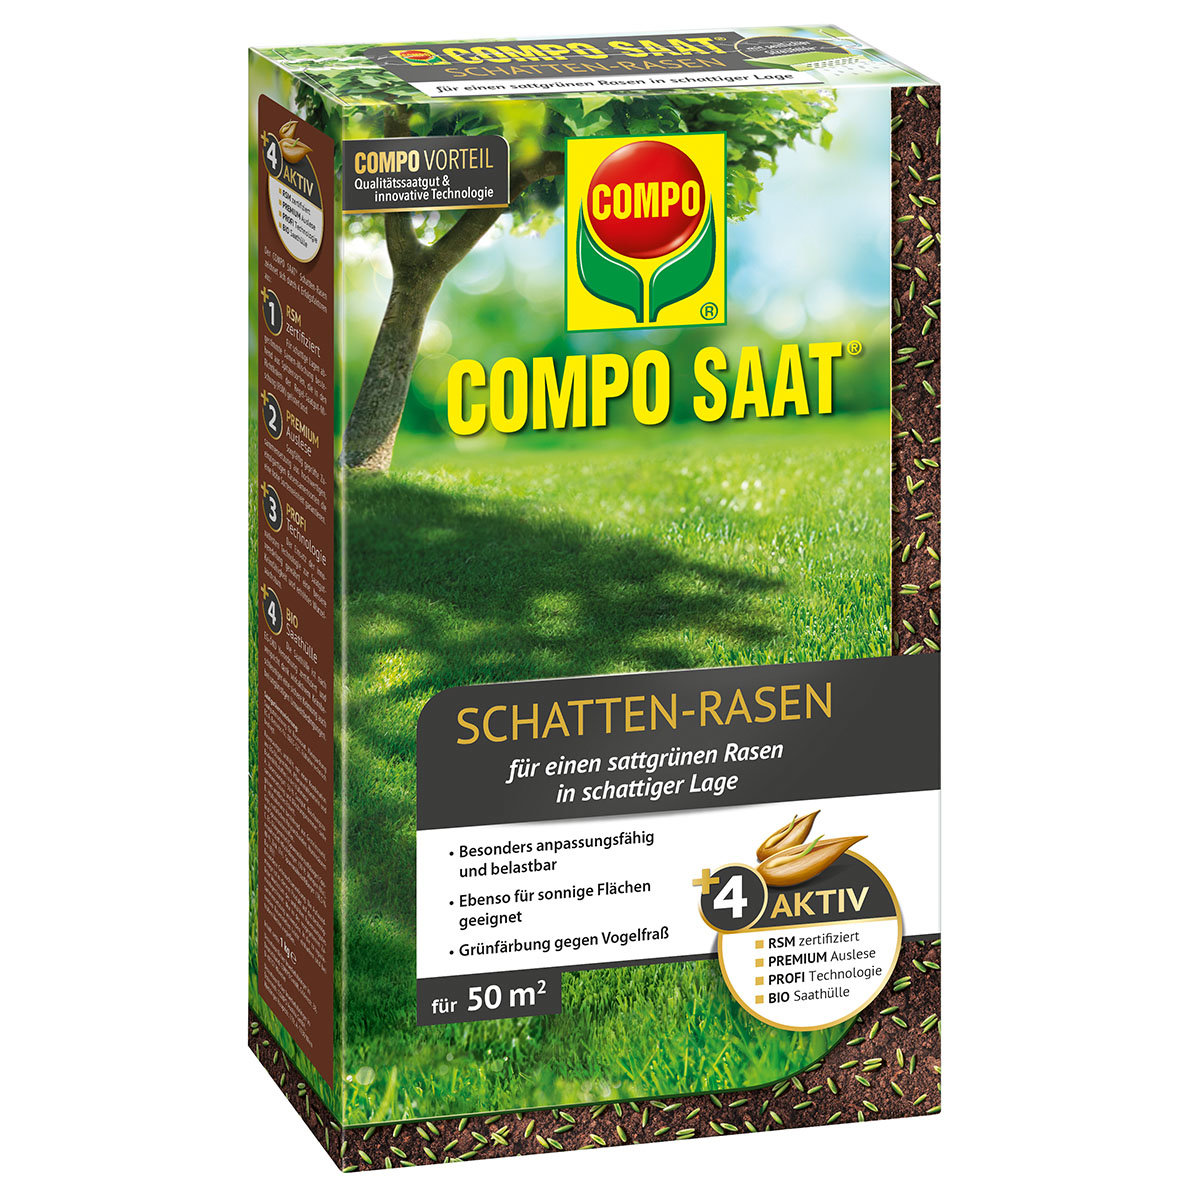 Compo SAAT® Schatten-Rasen, 1 kg
